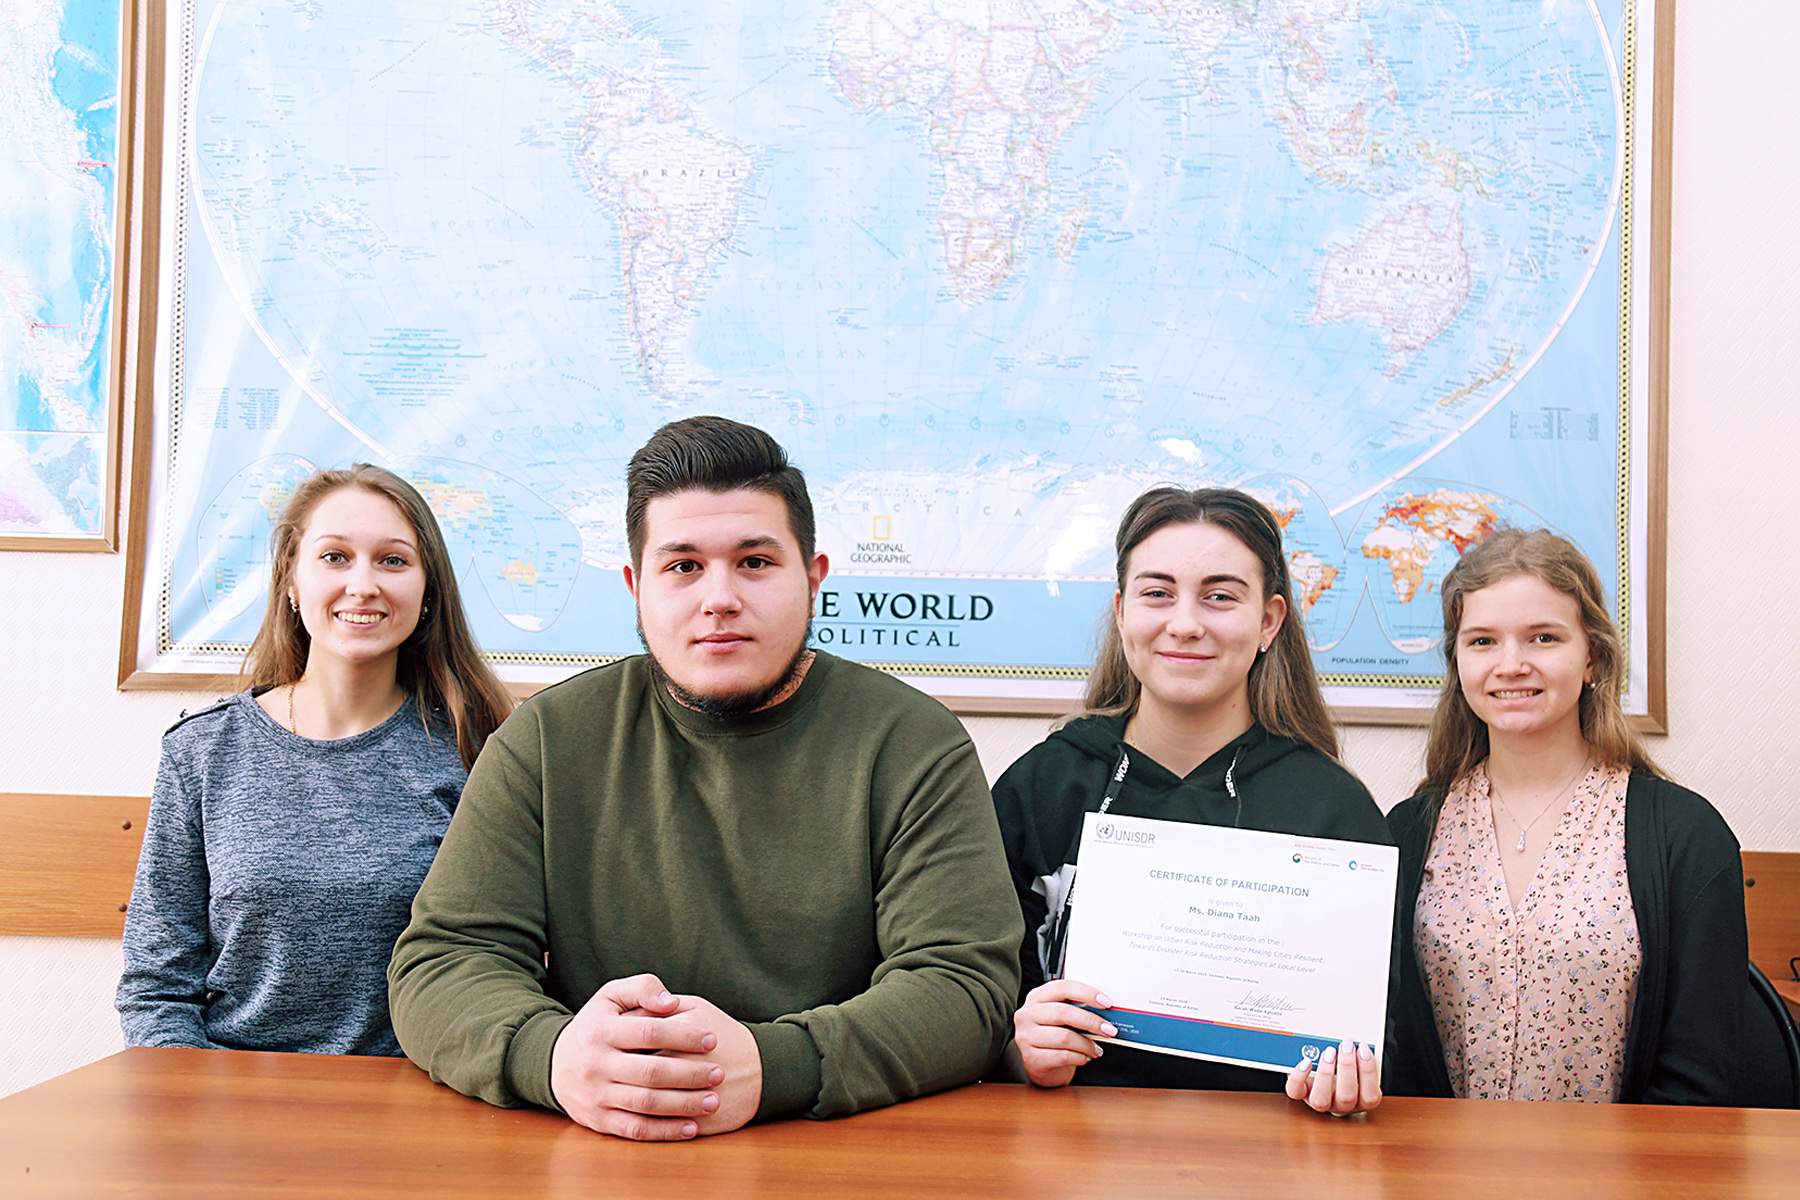 Работа по всему миру: студенты ВГУЭС получили сертификаты от Института ООН